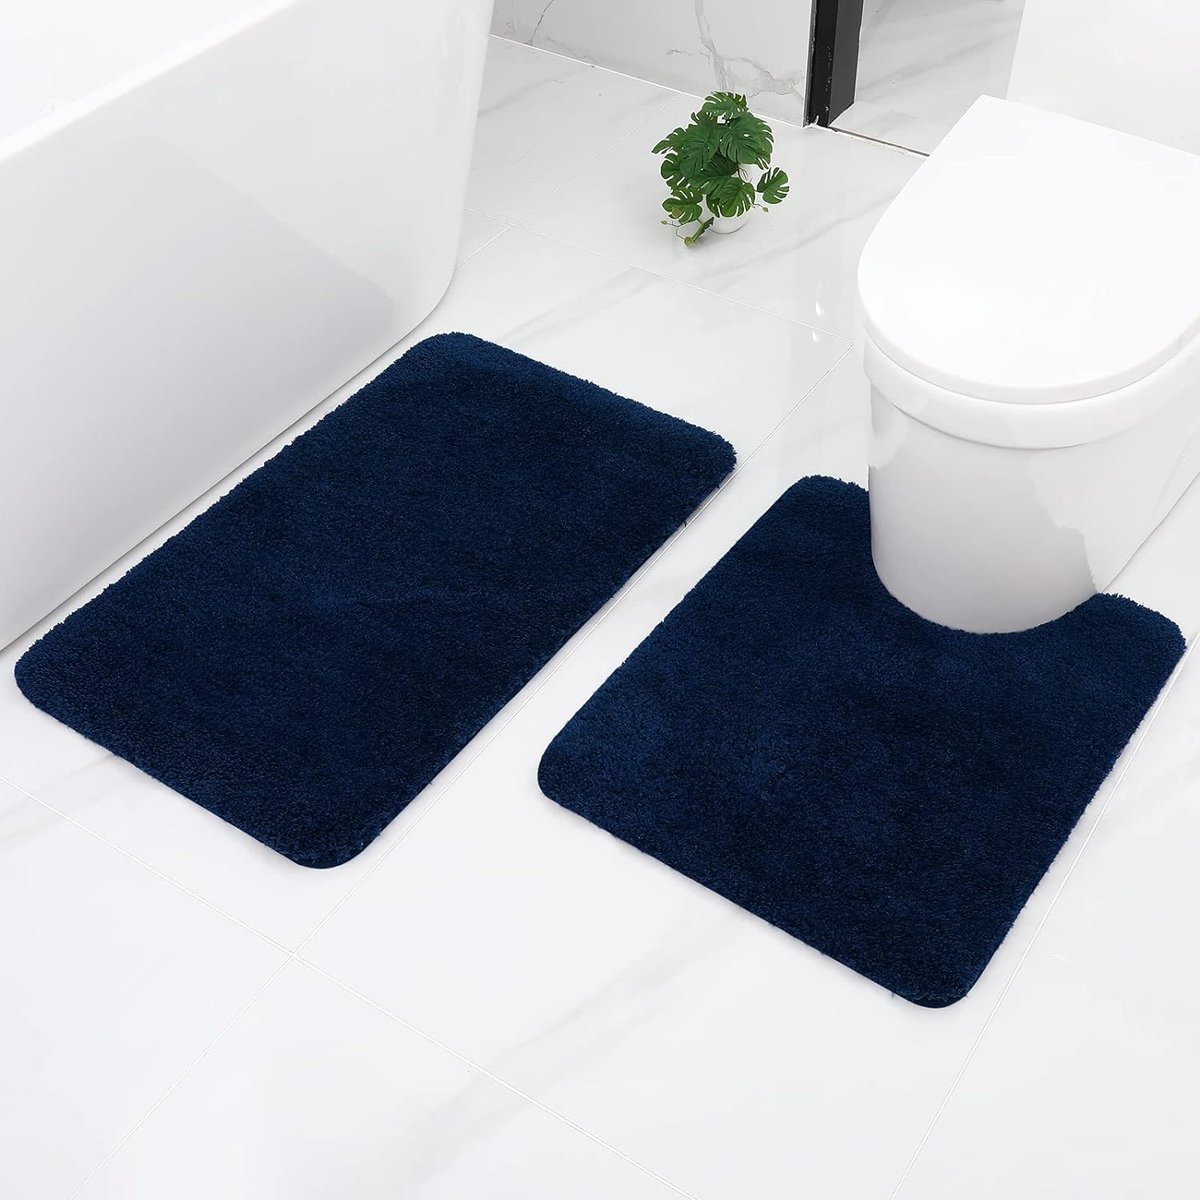 Badkamertapijten, 2-delige set wc-matten met uitsparing, antislip, wasbaar, hoogpolig, badmat, microvezel, badmatset - 50 x 60 cm + 50 x 80 cm, marineblauw